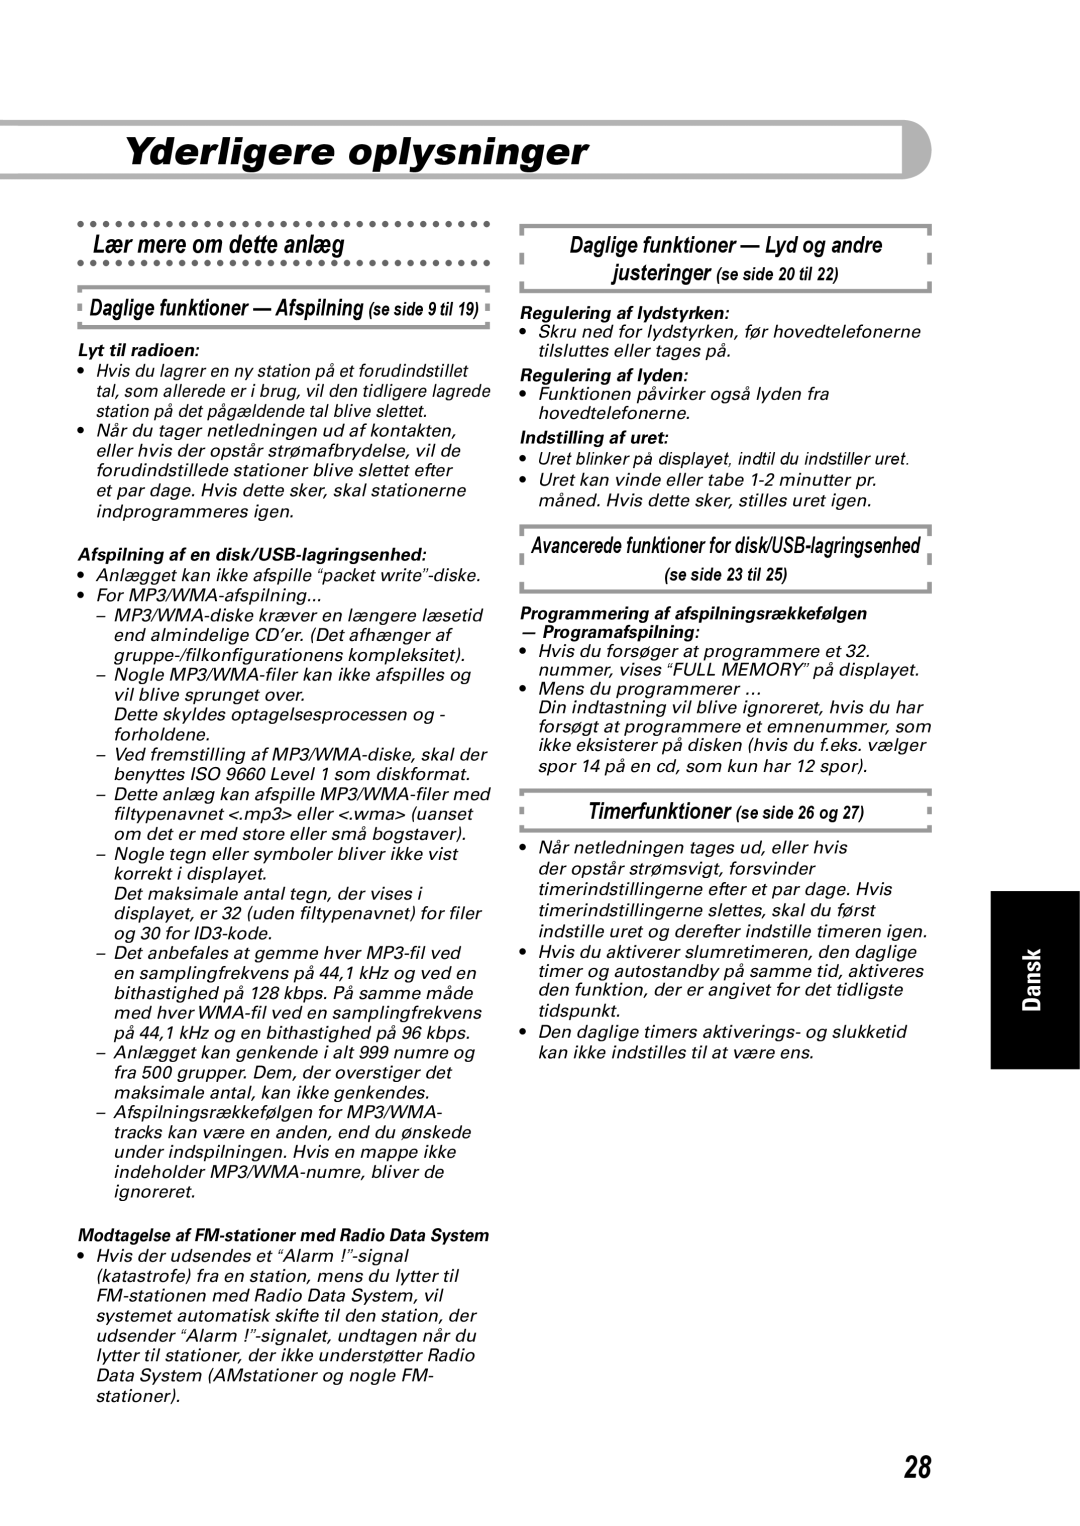 JVC SP-UXEP25 manual Yderligere oplysninger, Lær mere om dette anlæg, Daglige funktioner — Afspilning se side 9 til, Dansk 